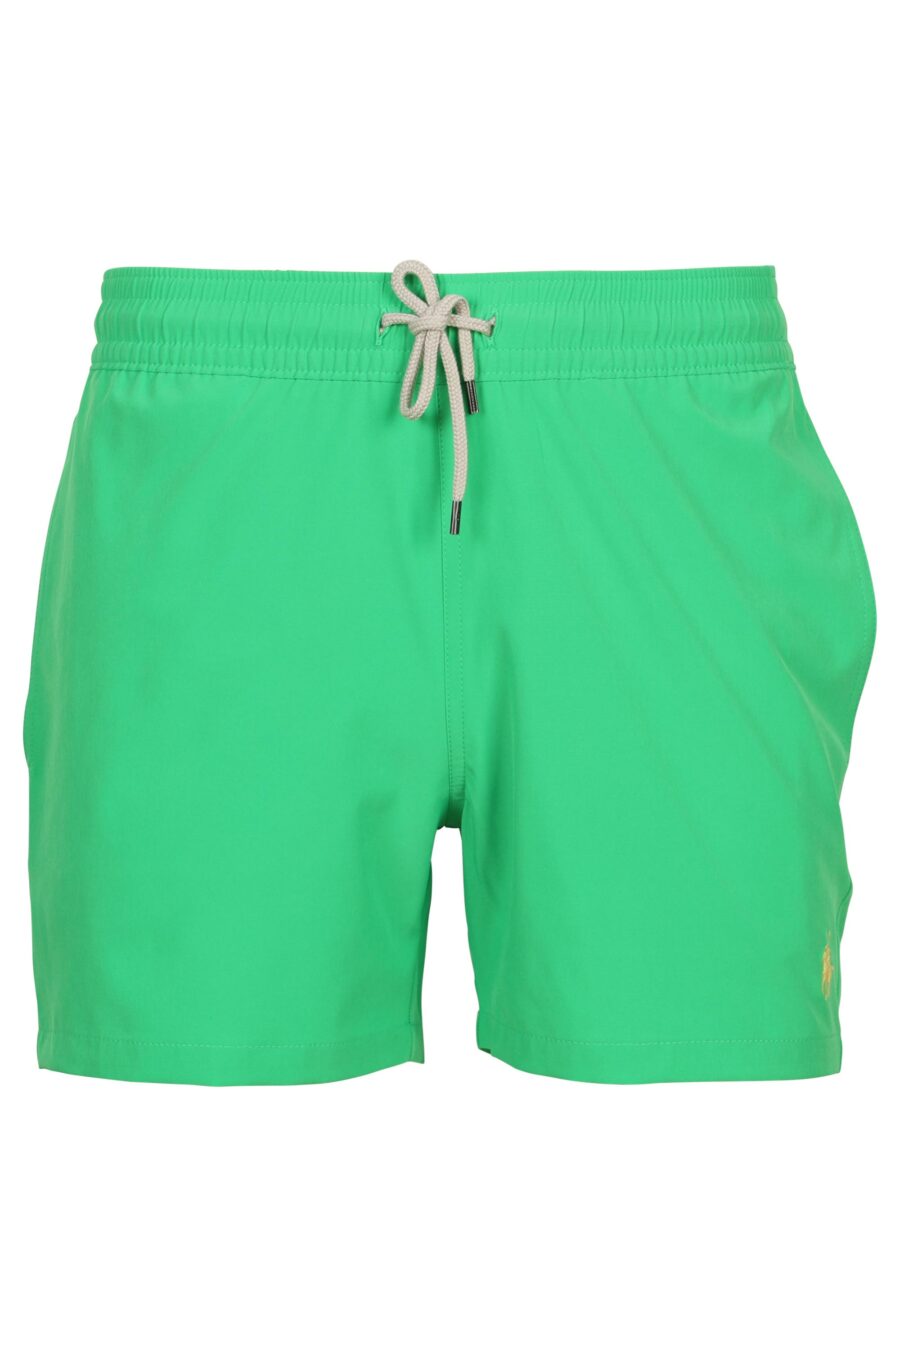 Pantalón corto verde con minilogo "polo" - 3616535968080